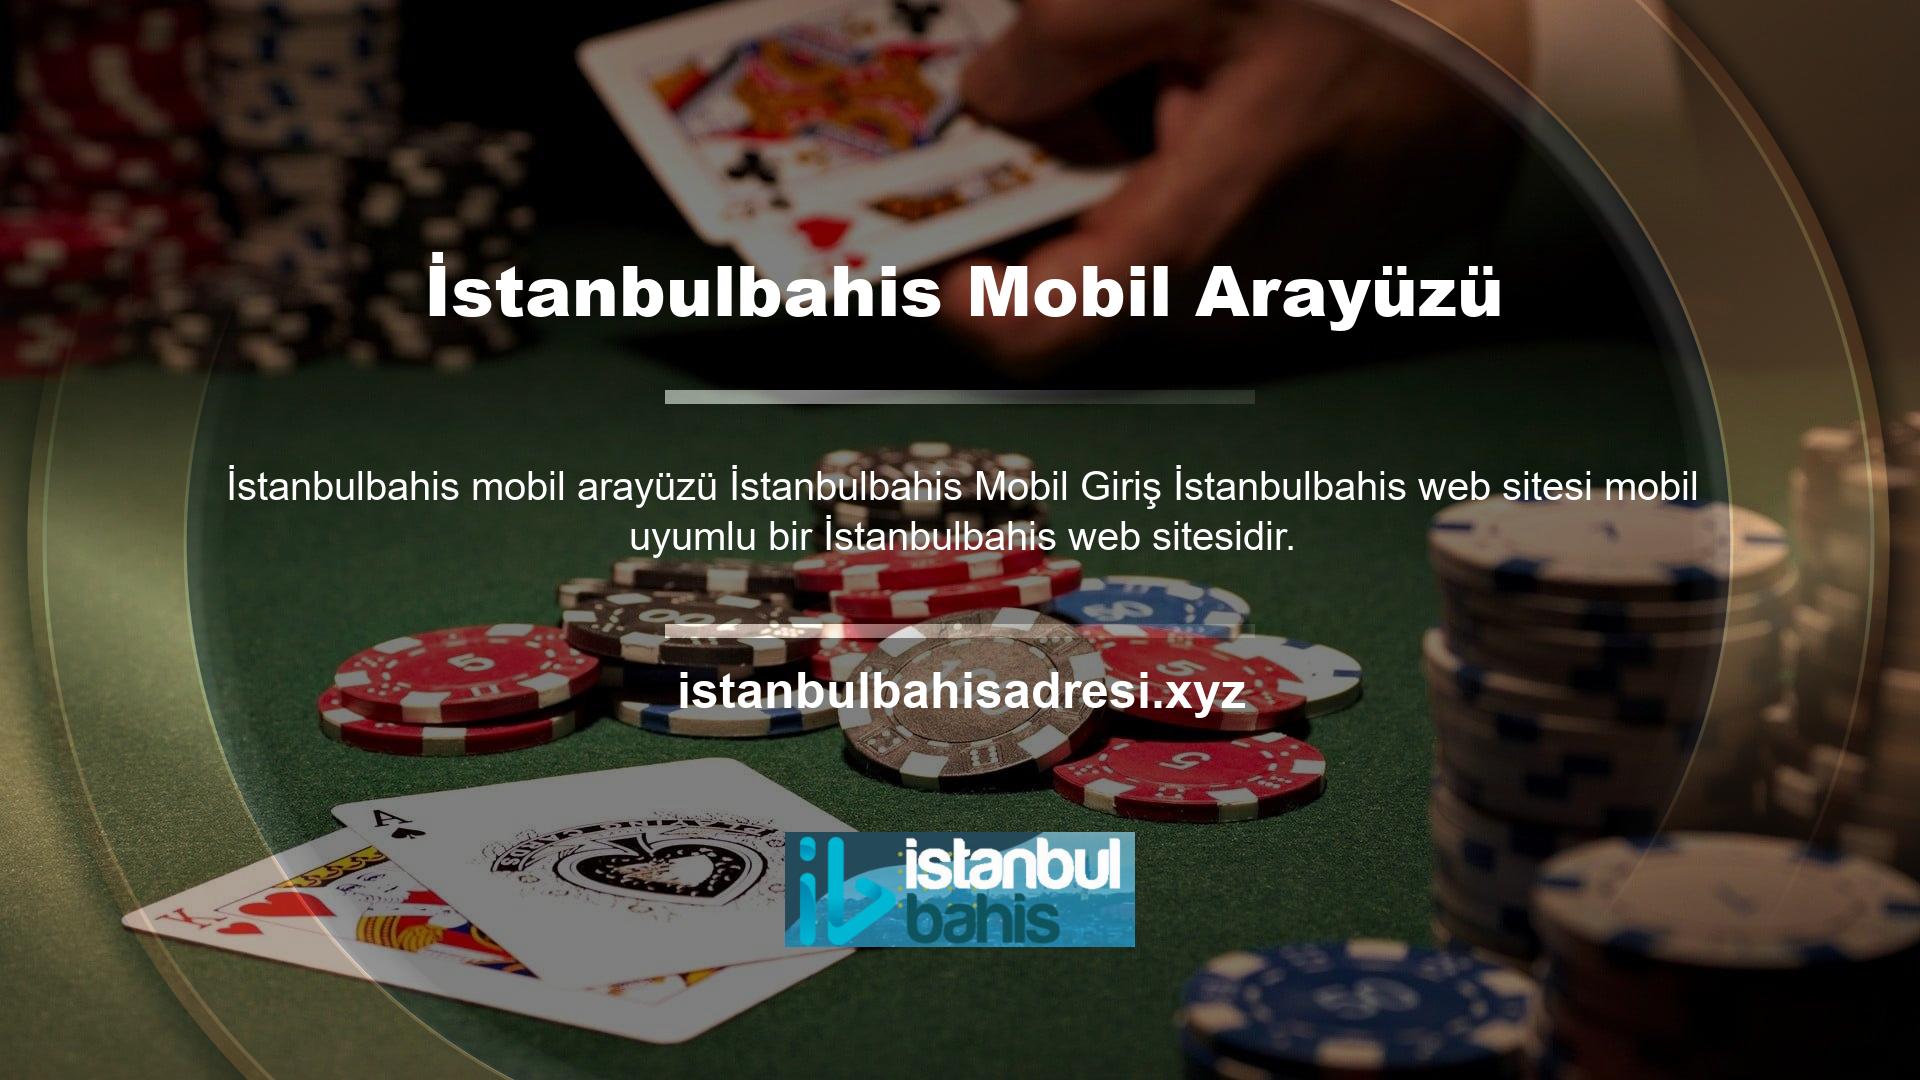 Bu nedenle mobil cihazınızdan İstanbulbahis sitesine giriş yaptığınızda mobil bir arayüz göreceksiniz